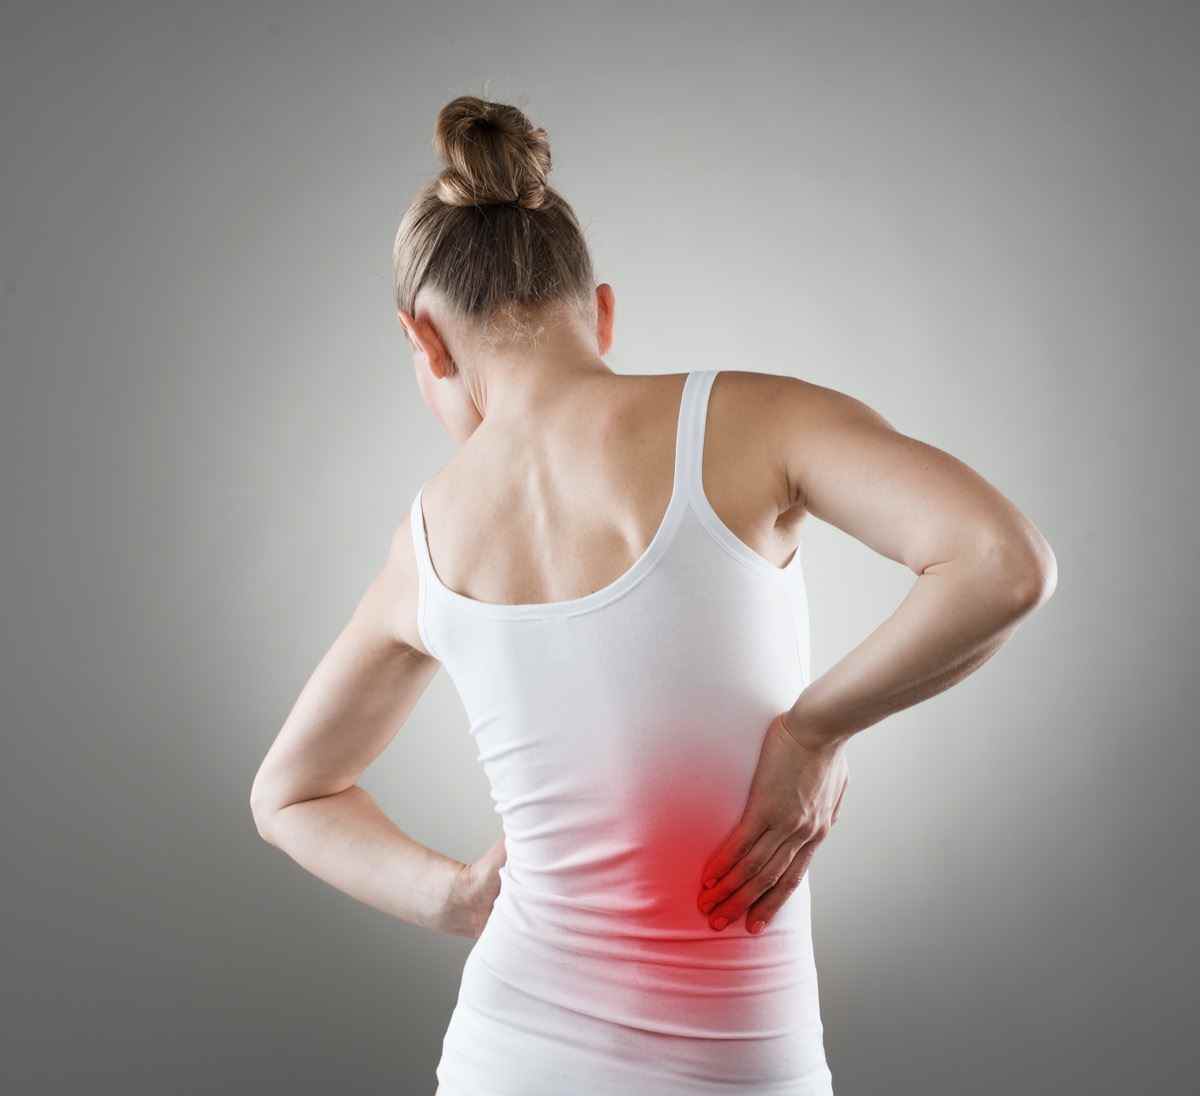 Schmerzen.  Chronische Nierenerkrankung, die durch einen roten Fleck auf dem Körper der Frau angezeigt wird.